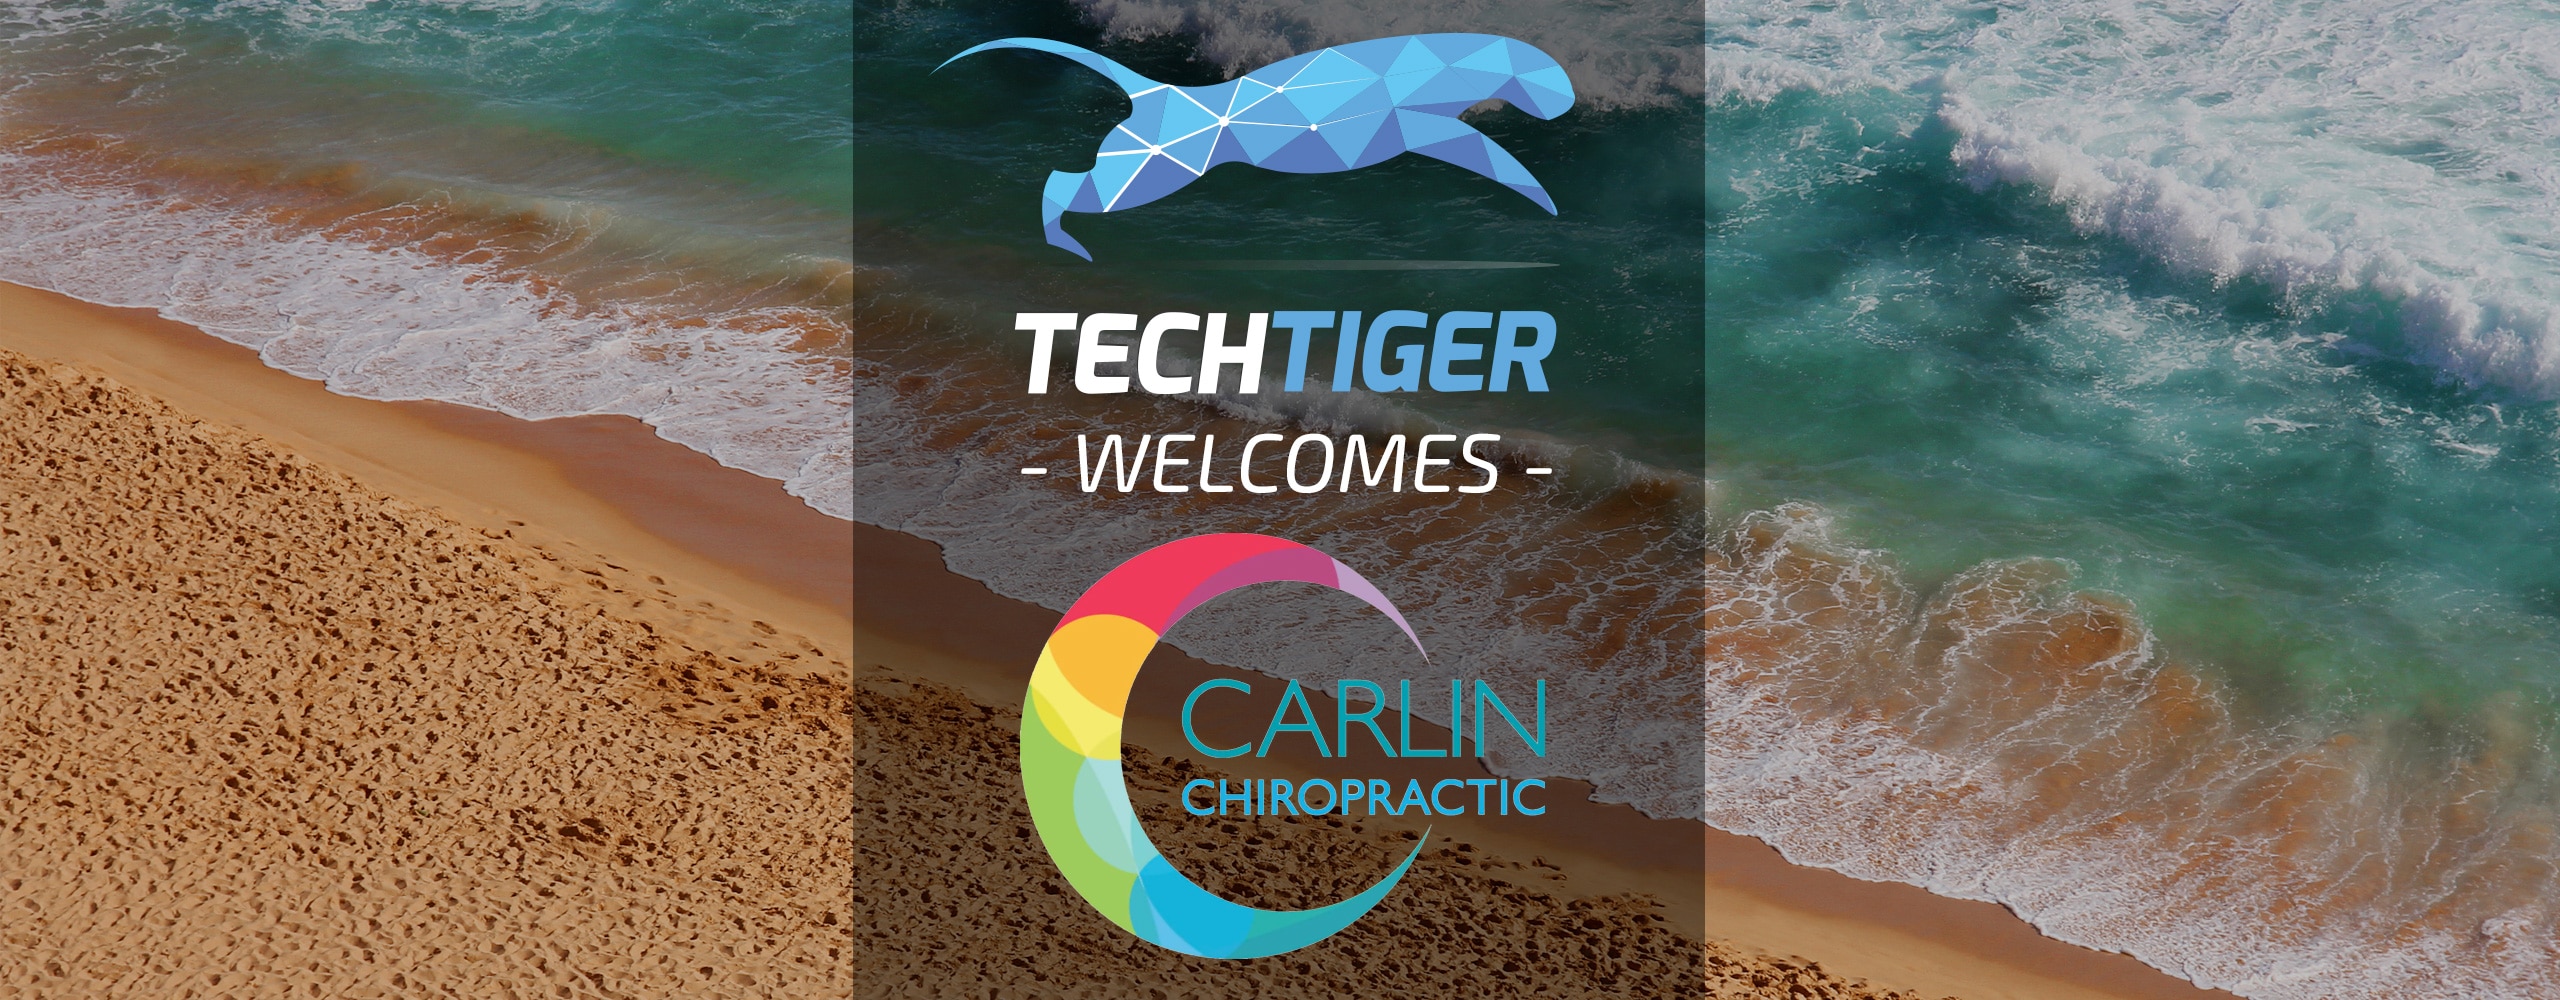 TechTiger welcomes Carlin Chiropractic